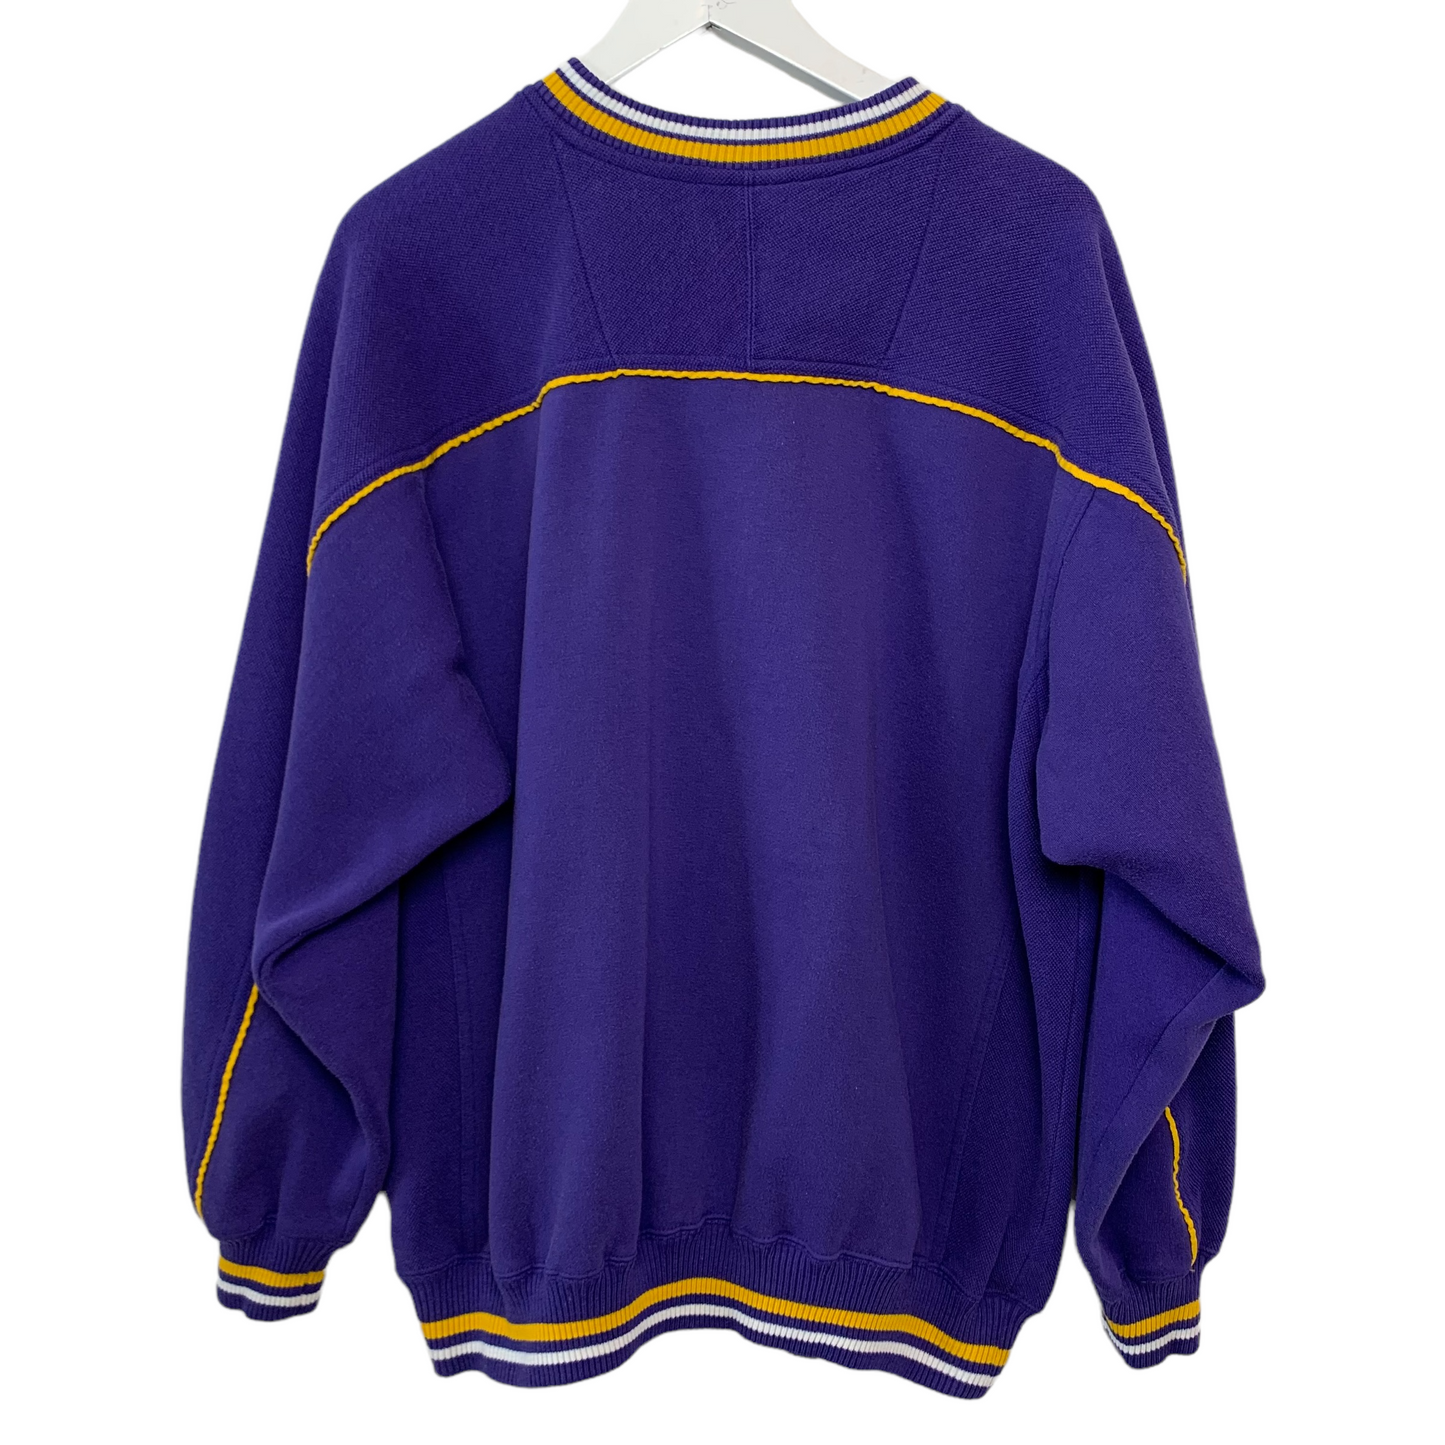 Vintage 90s Lee Minnesota Vikings Sweatshirt Pullover Large